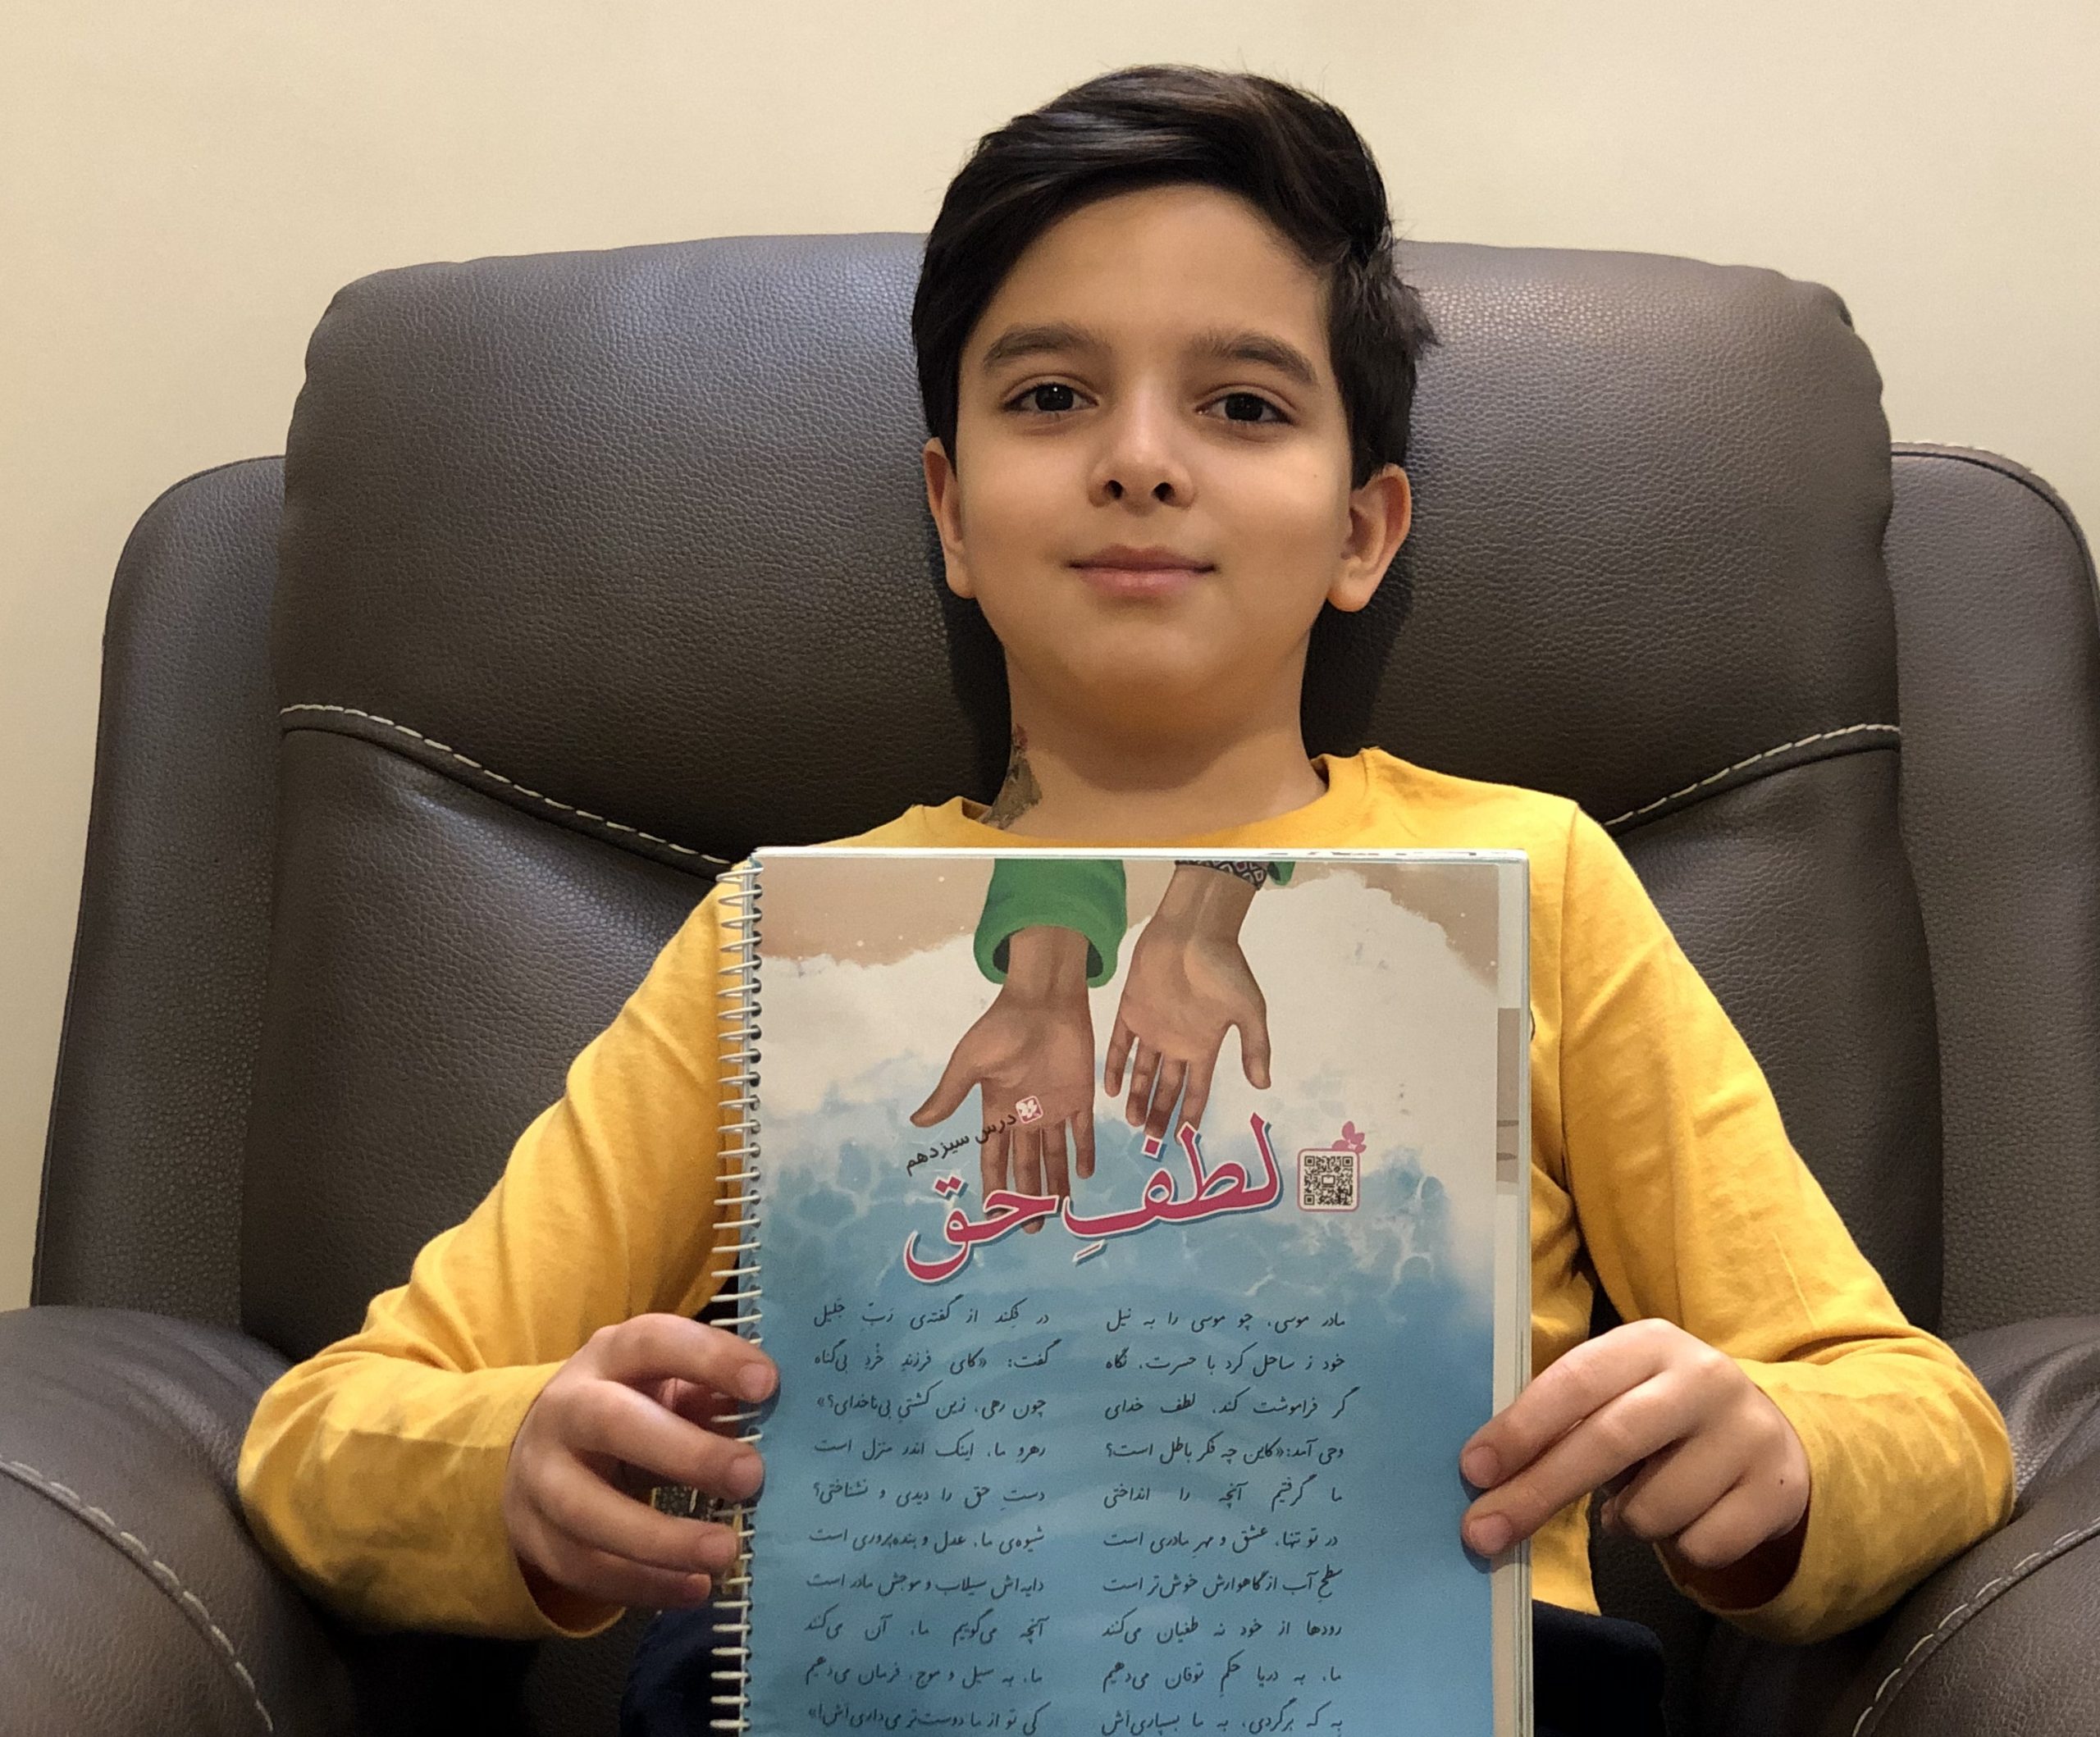 شعر لطف حق به زبان انگلیسی توسط امیرحسین کودک دو زبانه 9 سال